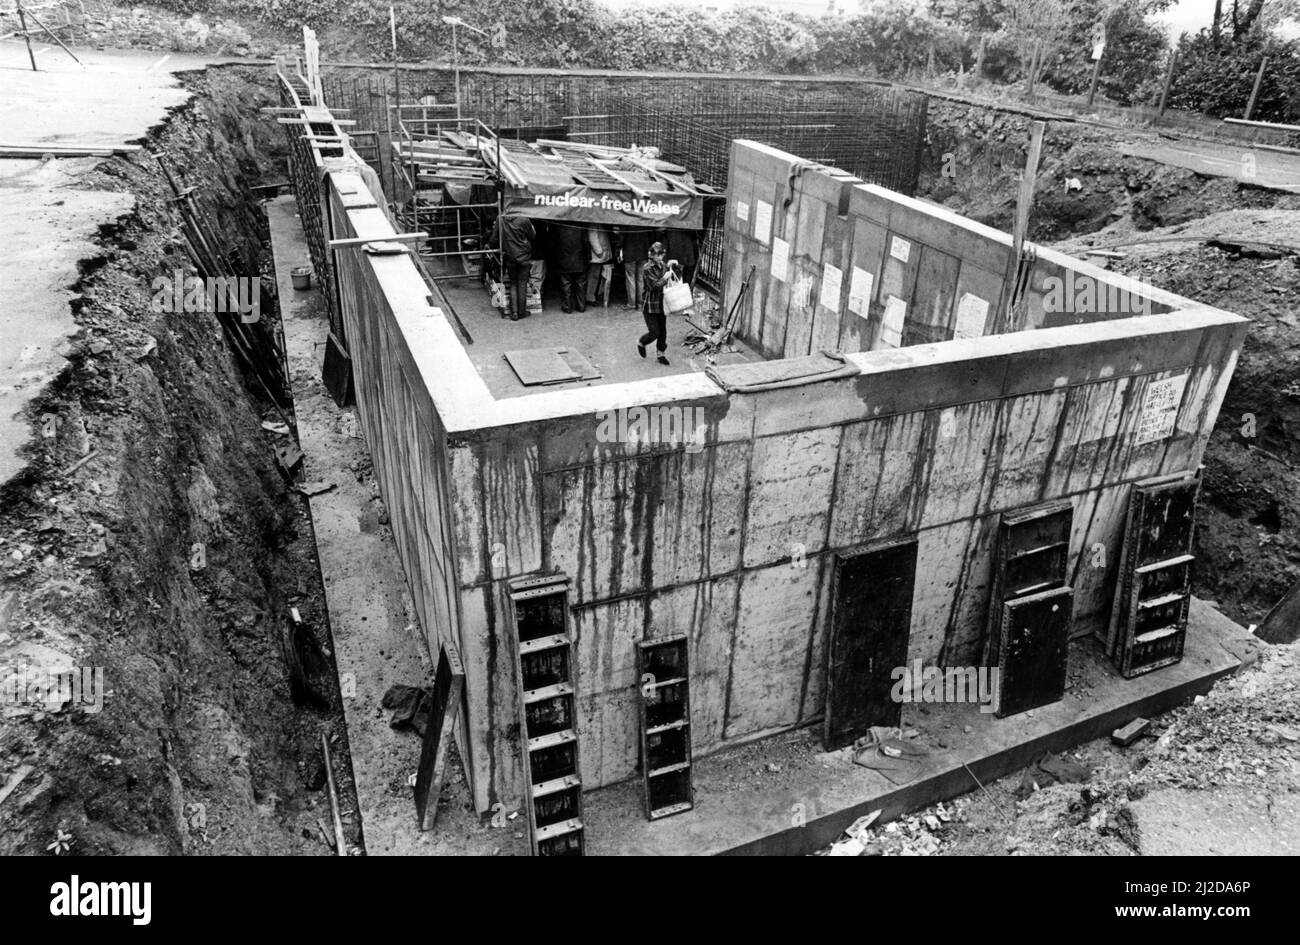 Les manifestants anti-nucléaires établissent un abri dans ce qu'ils disent est le bunker nucléaire partiellement construit du Conseil de district de Carmarthen. Vers septembre 1985. Banque D'Images